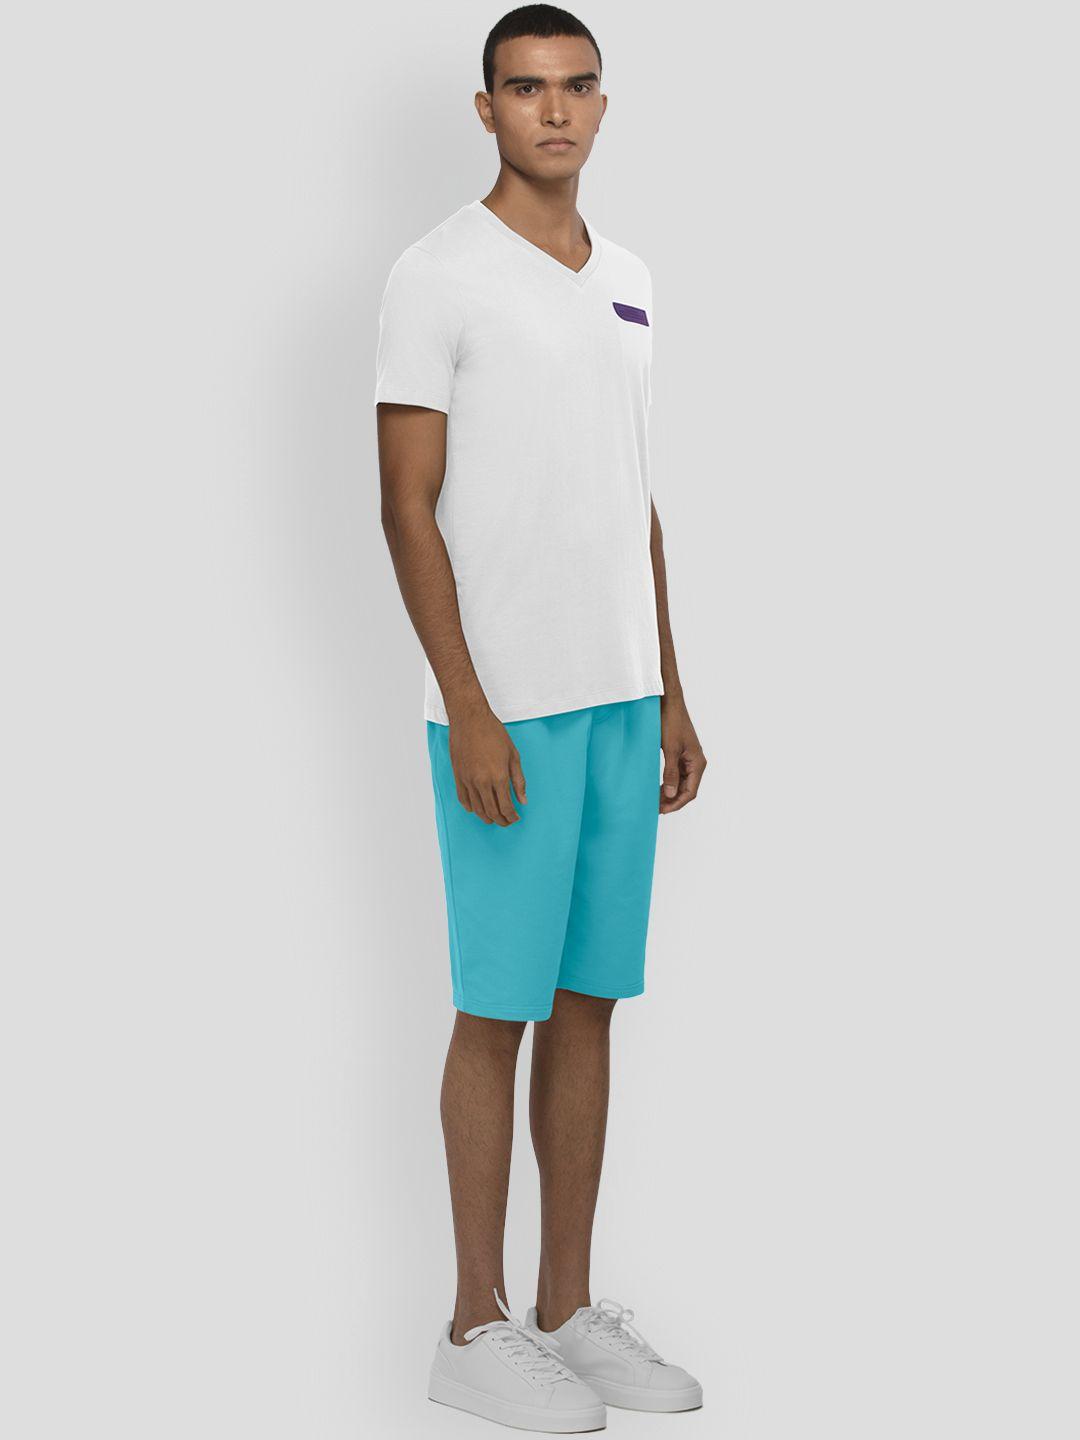 pangolin v-neck short sleeves lightweight cotton t-shirt